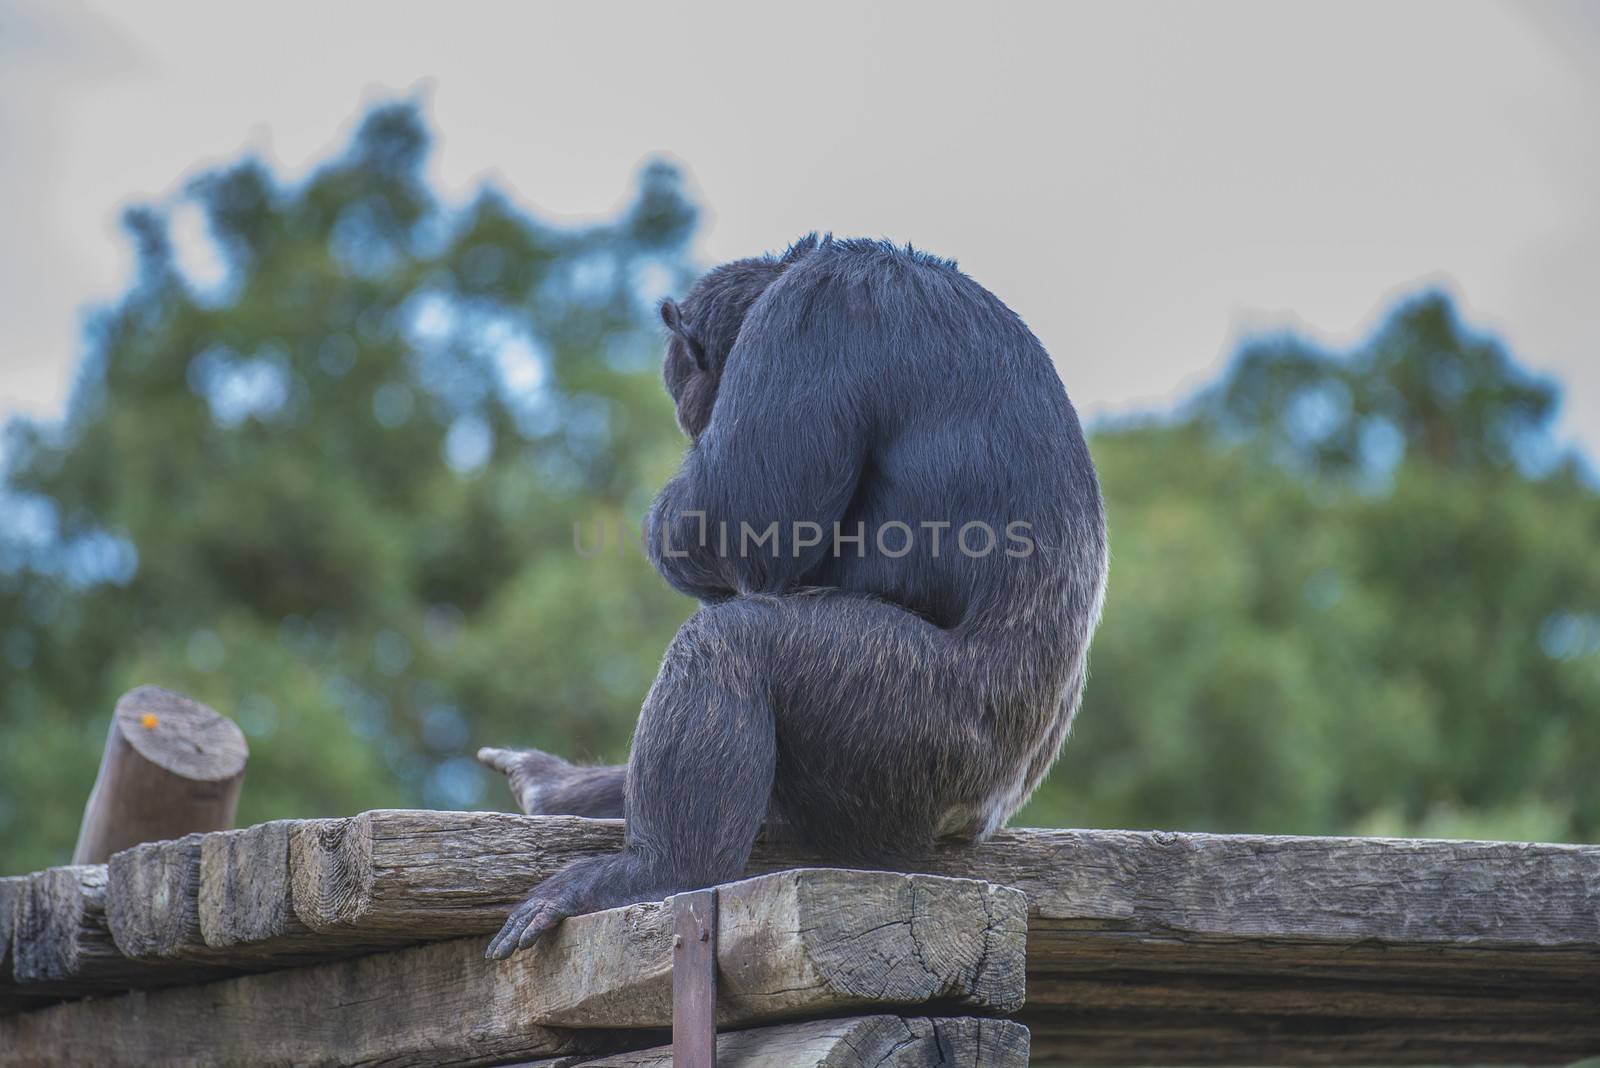 chimpanzee (Pan troglodytes) by steirus